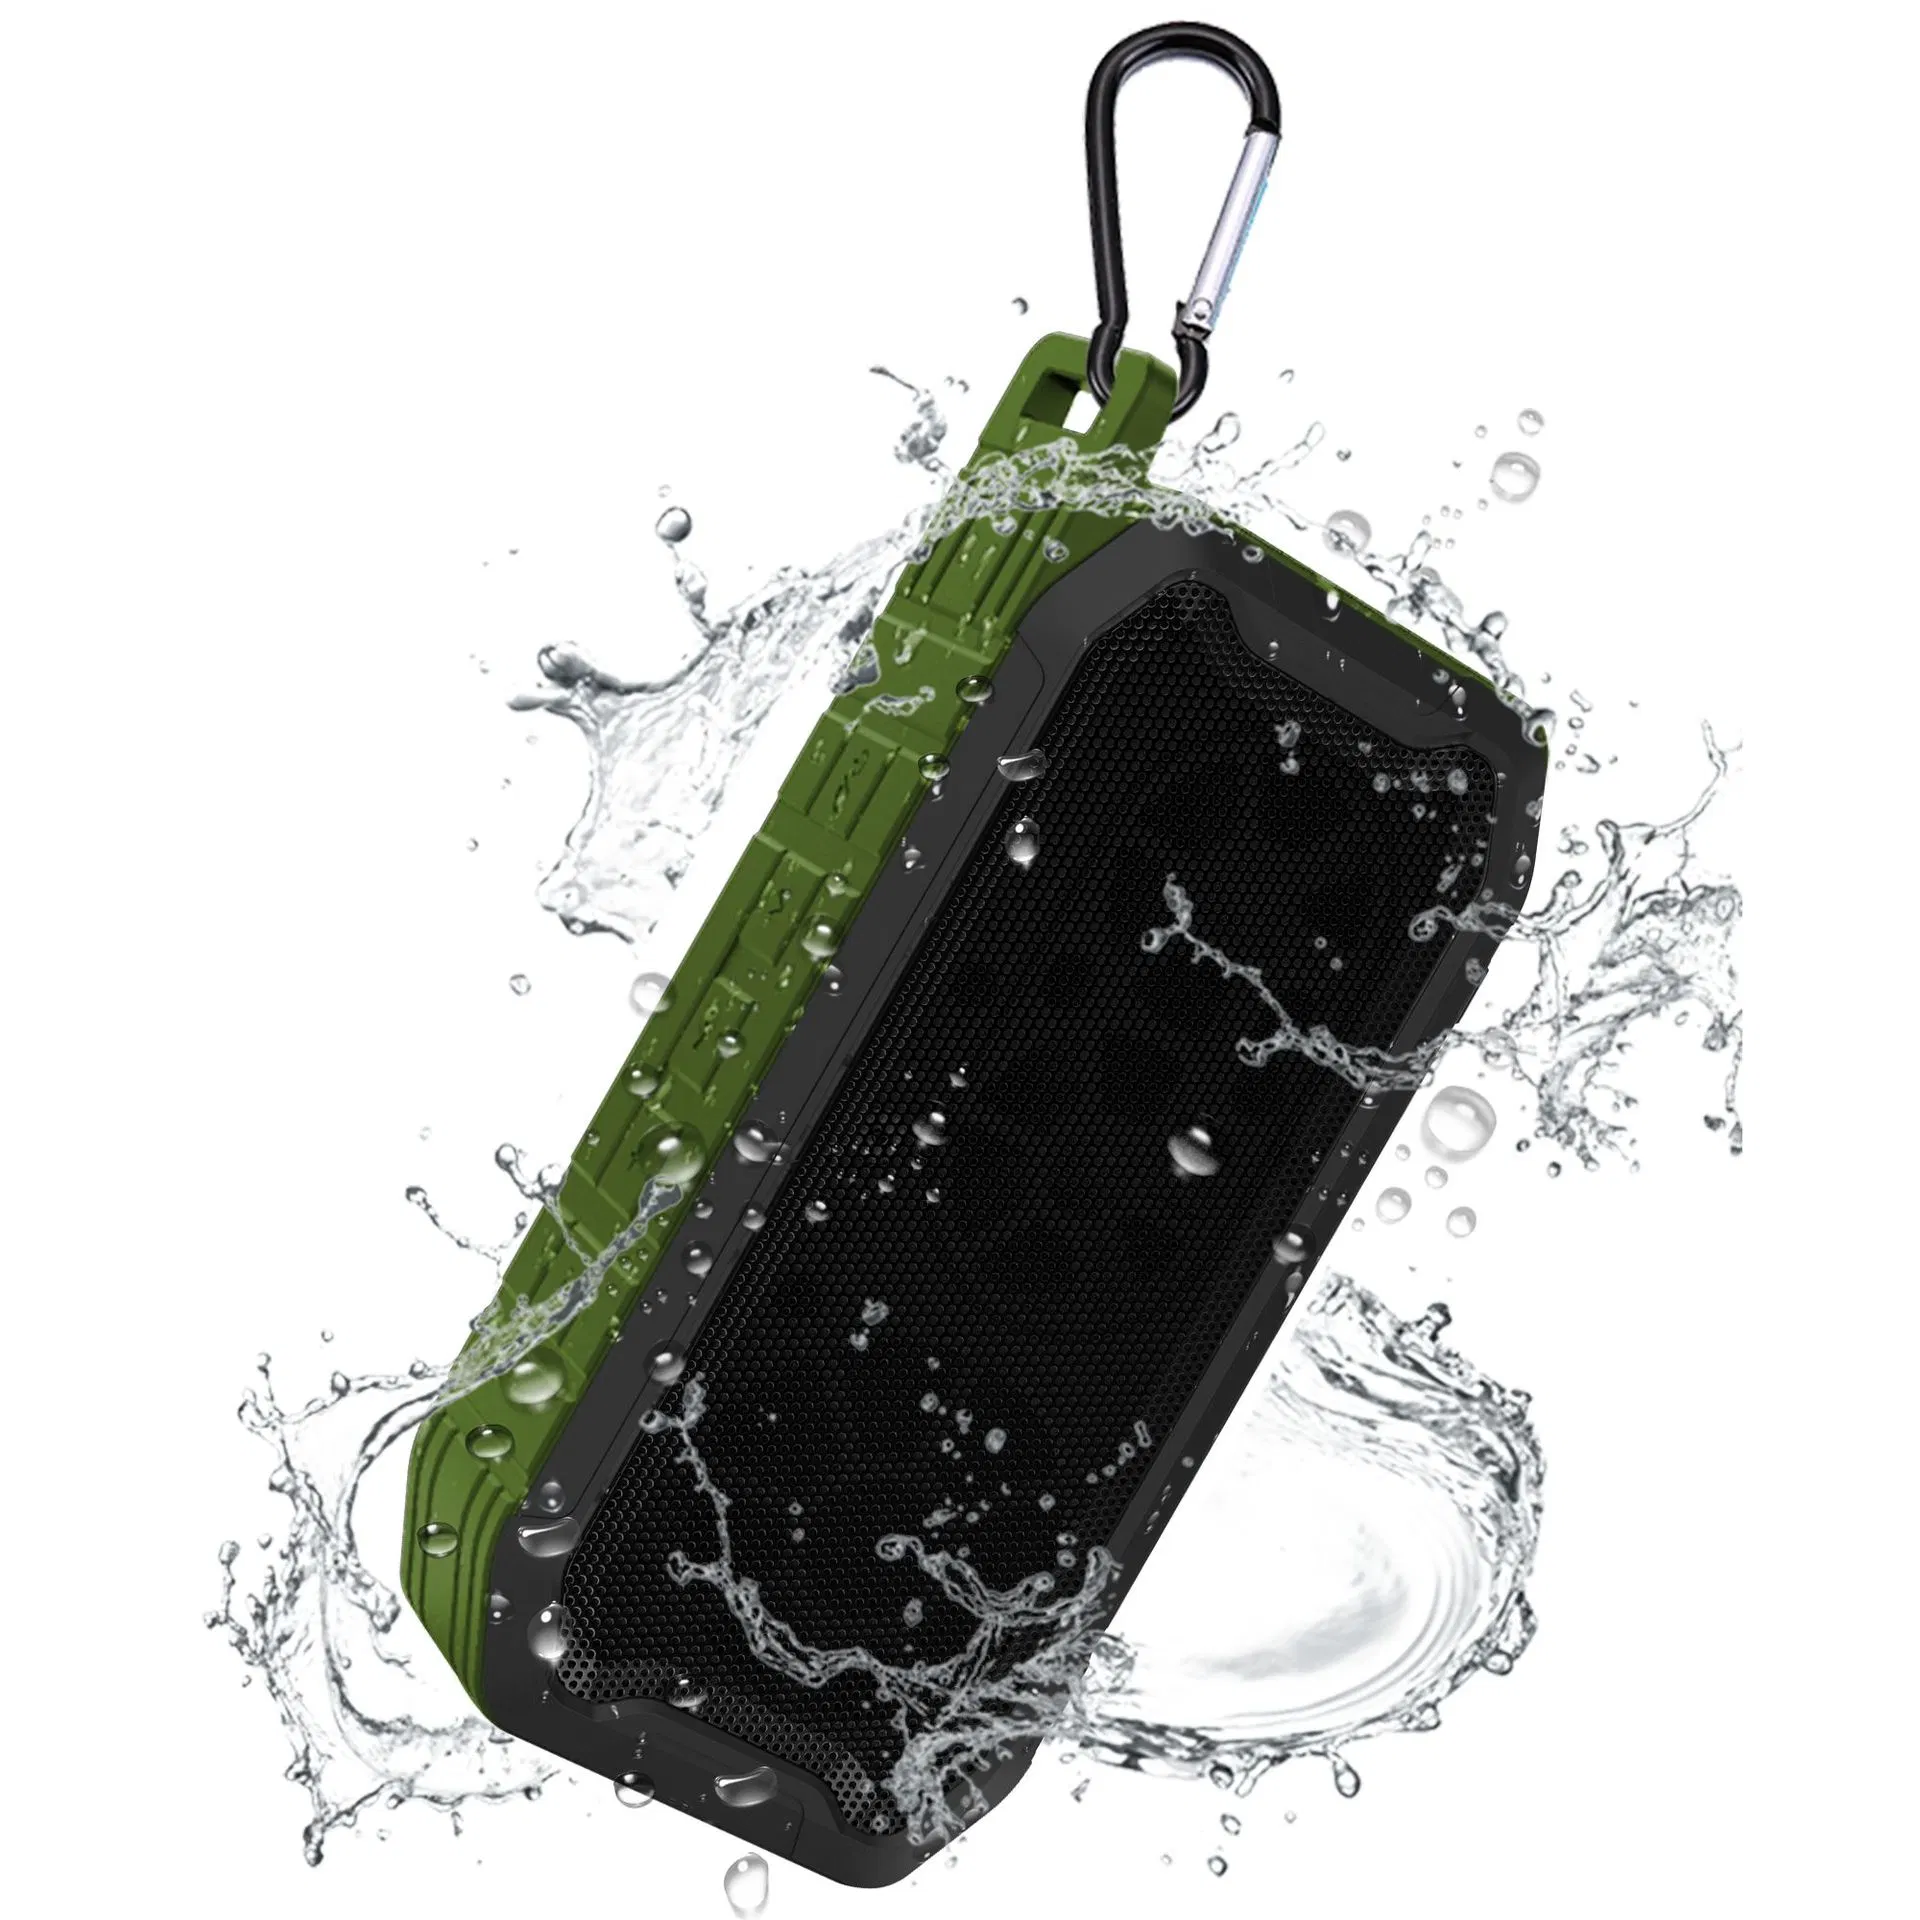 جودة أصلية احترافية في الهواء الطلق مقاومة للماء ميني صبووفر صاخب وصوت ستيريو سماعة Bluetooth لاسلكية محمولة نشطة لصندوق الصوت